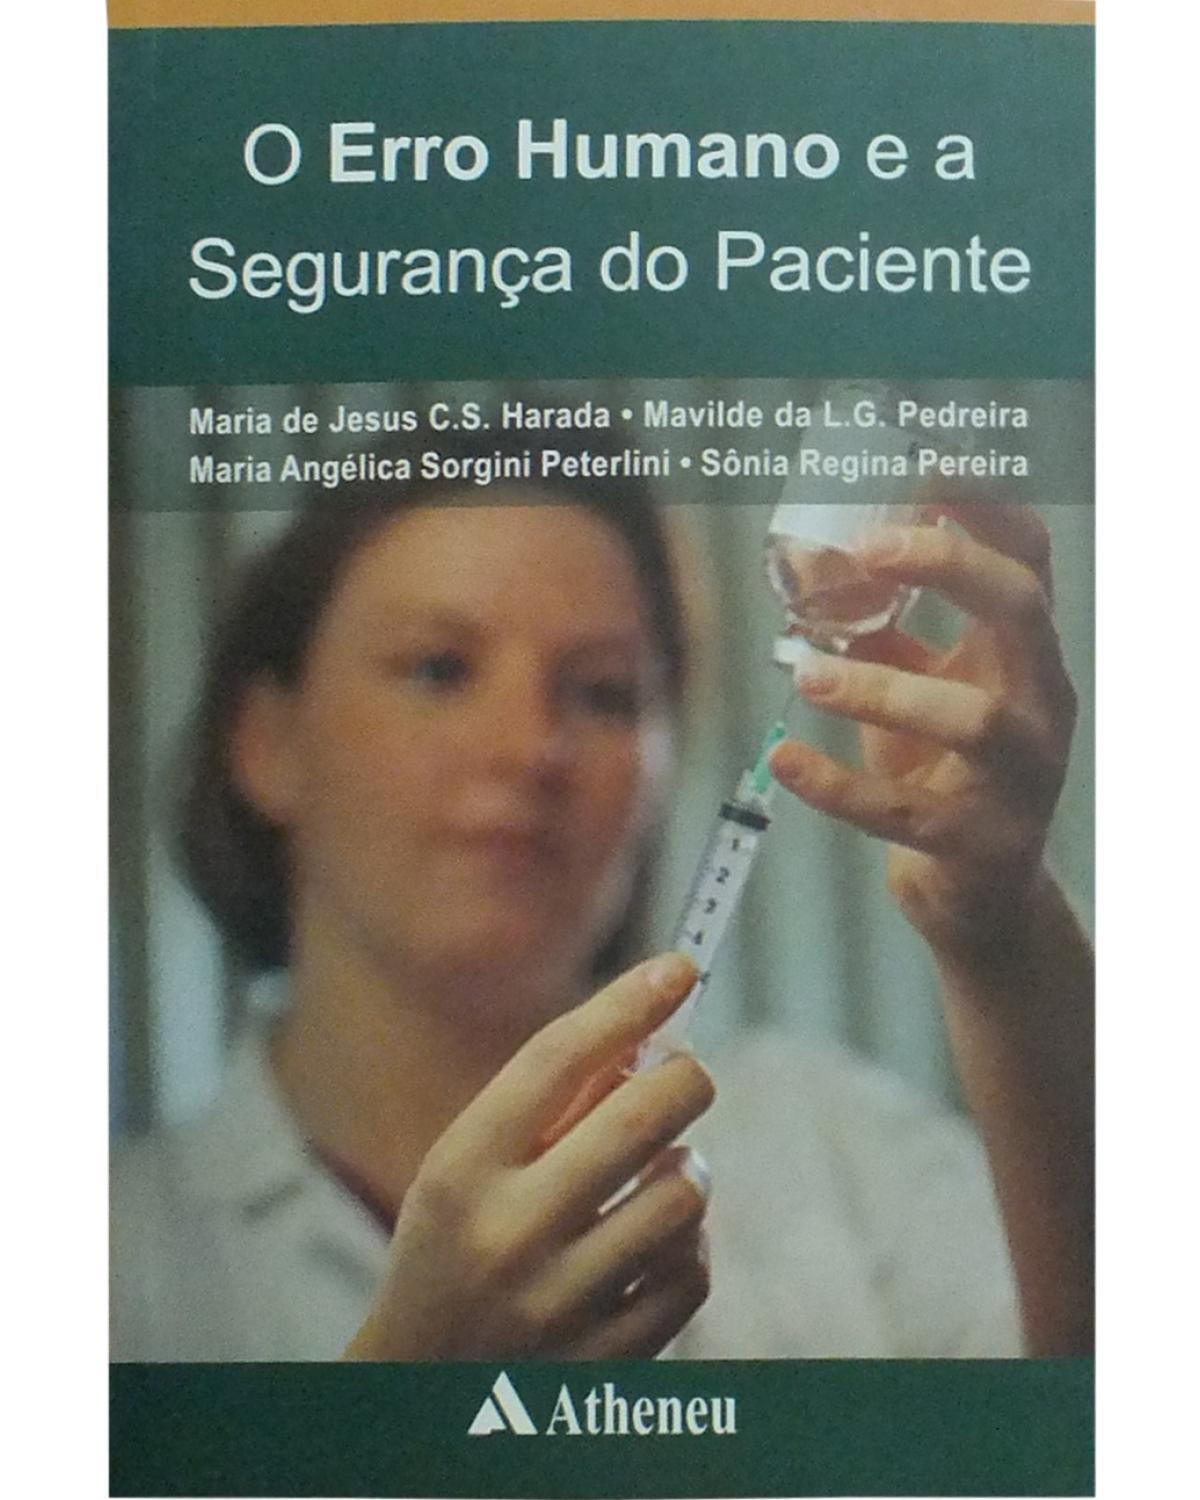 O erro humano e a segurança do paciente - 2ª Edição | 2006